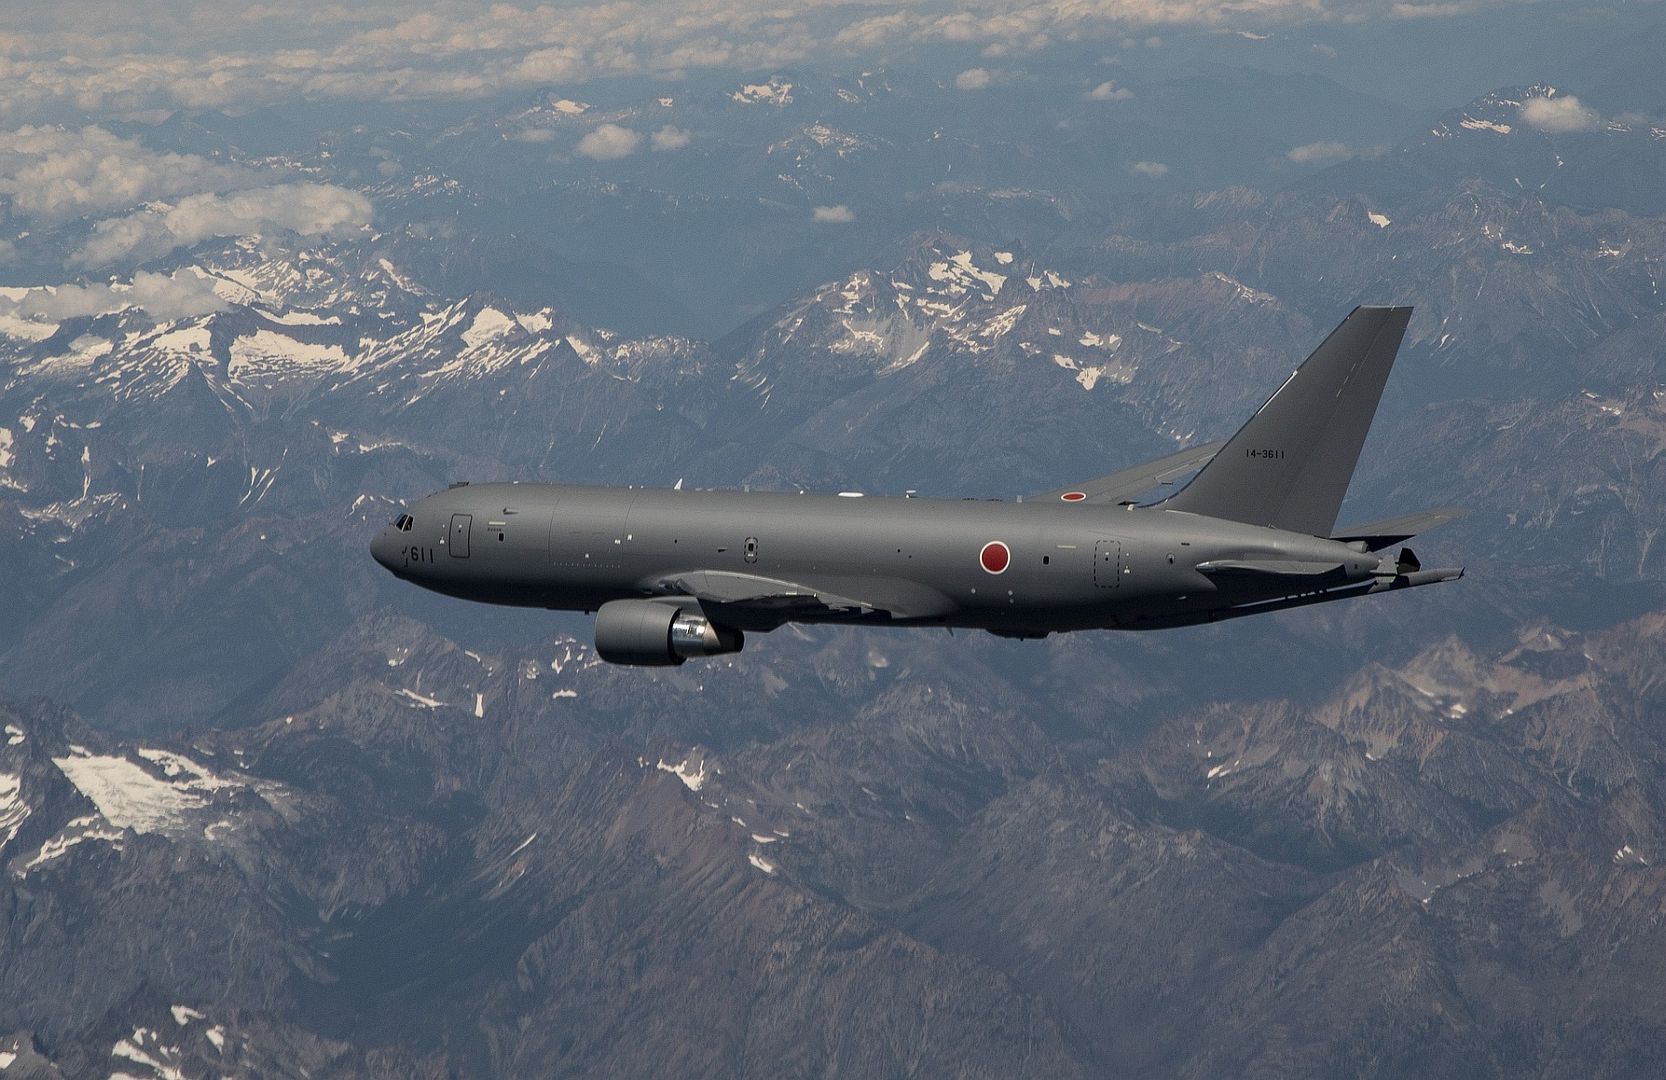 46A For Japan Flies First Refueling Flight